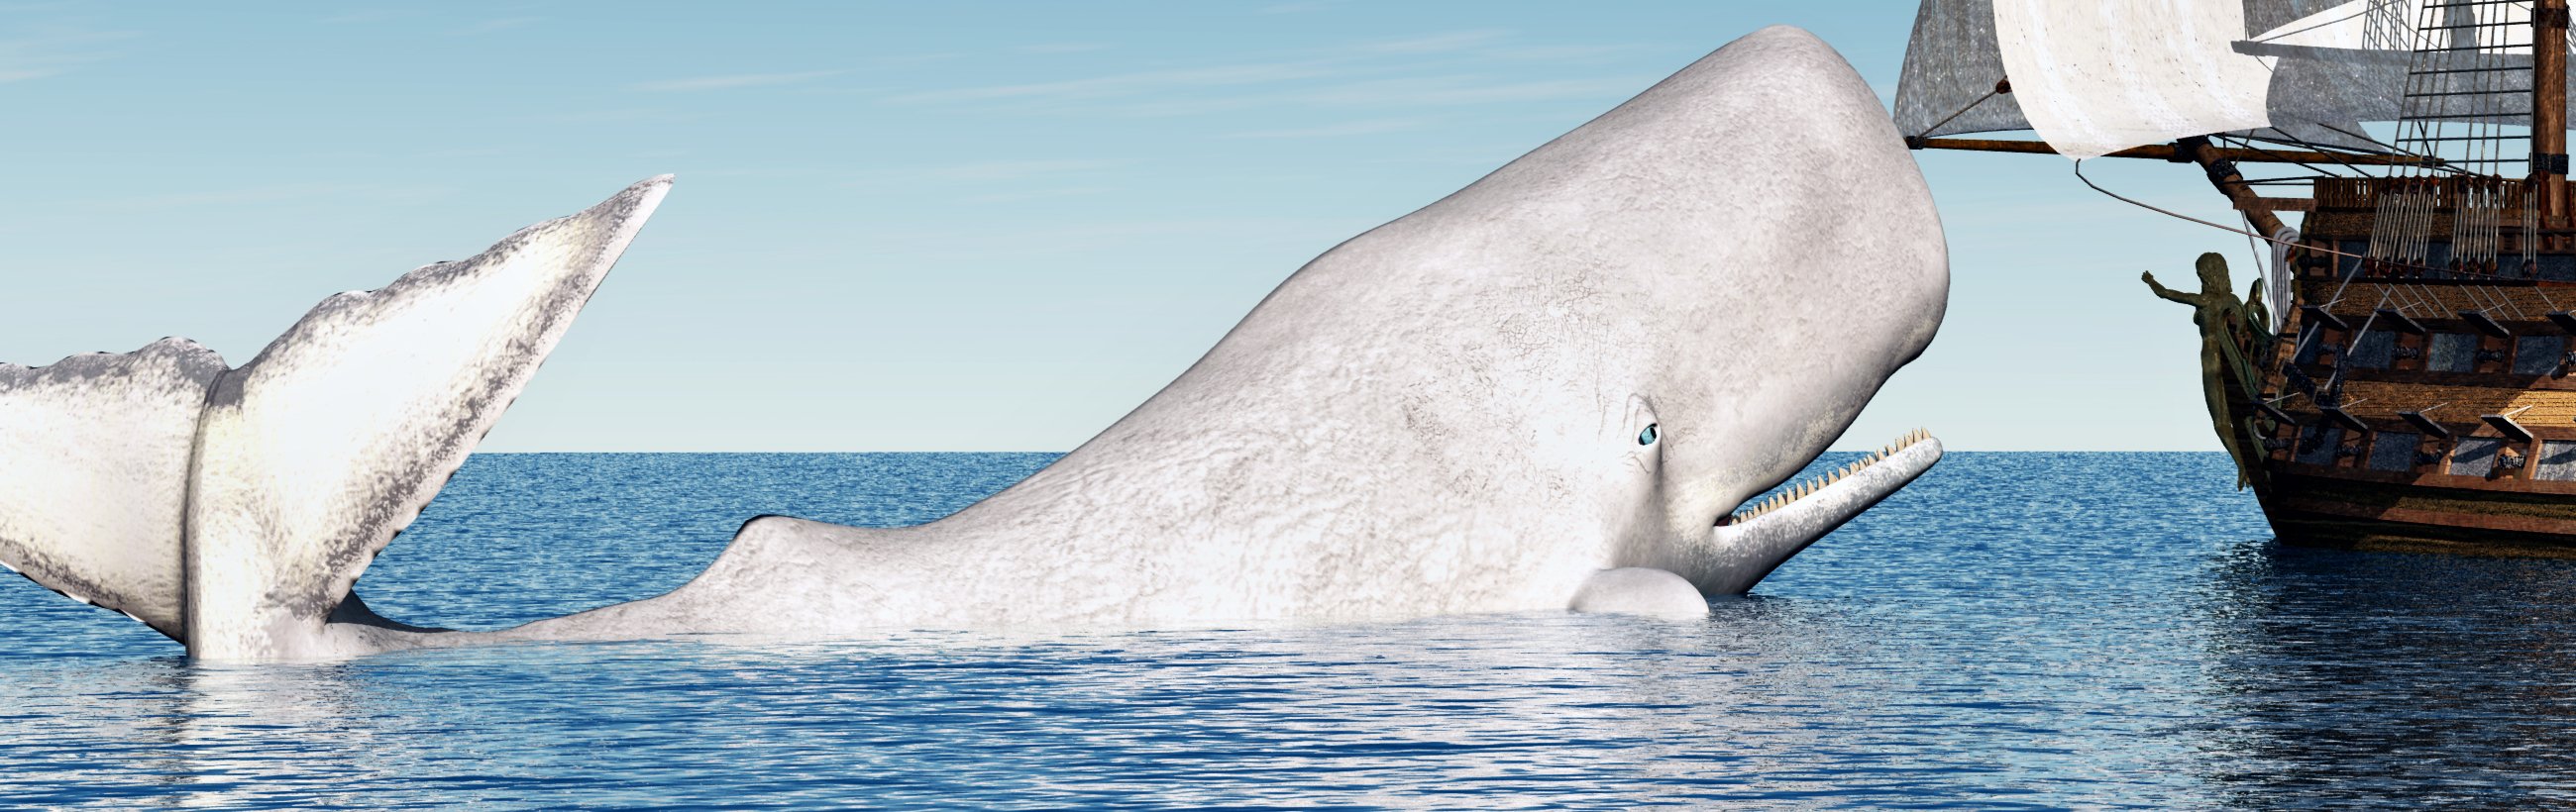 Der weiße Wal, der diejenigen rettet, die das Schiff verlassen